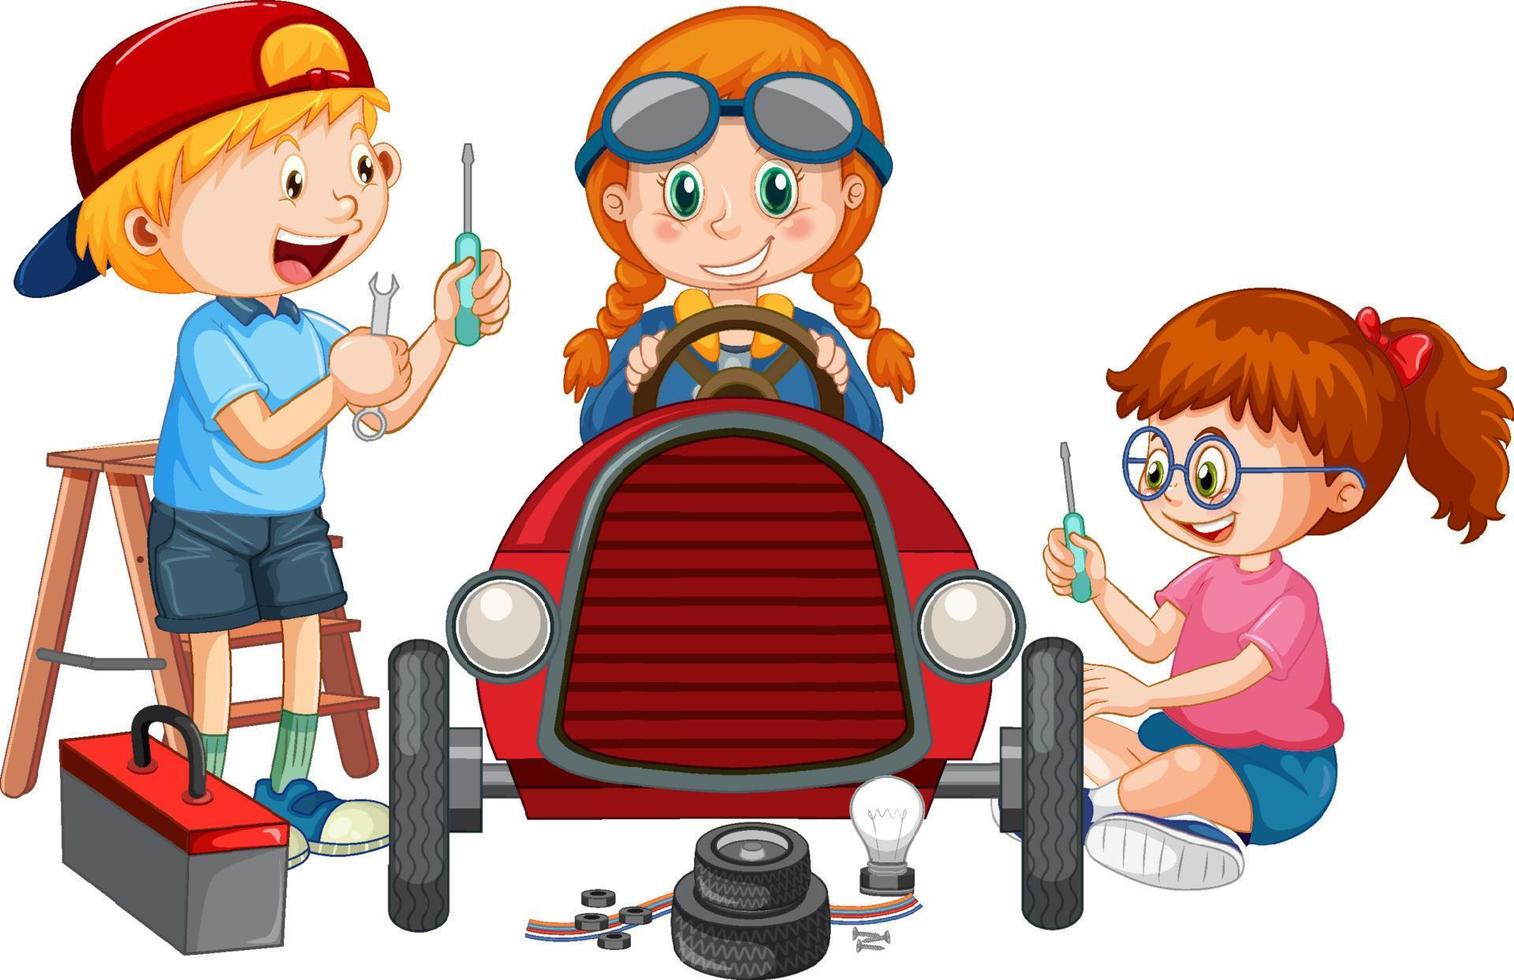 crianças consertando um carro juntas vetor